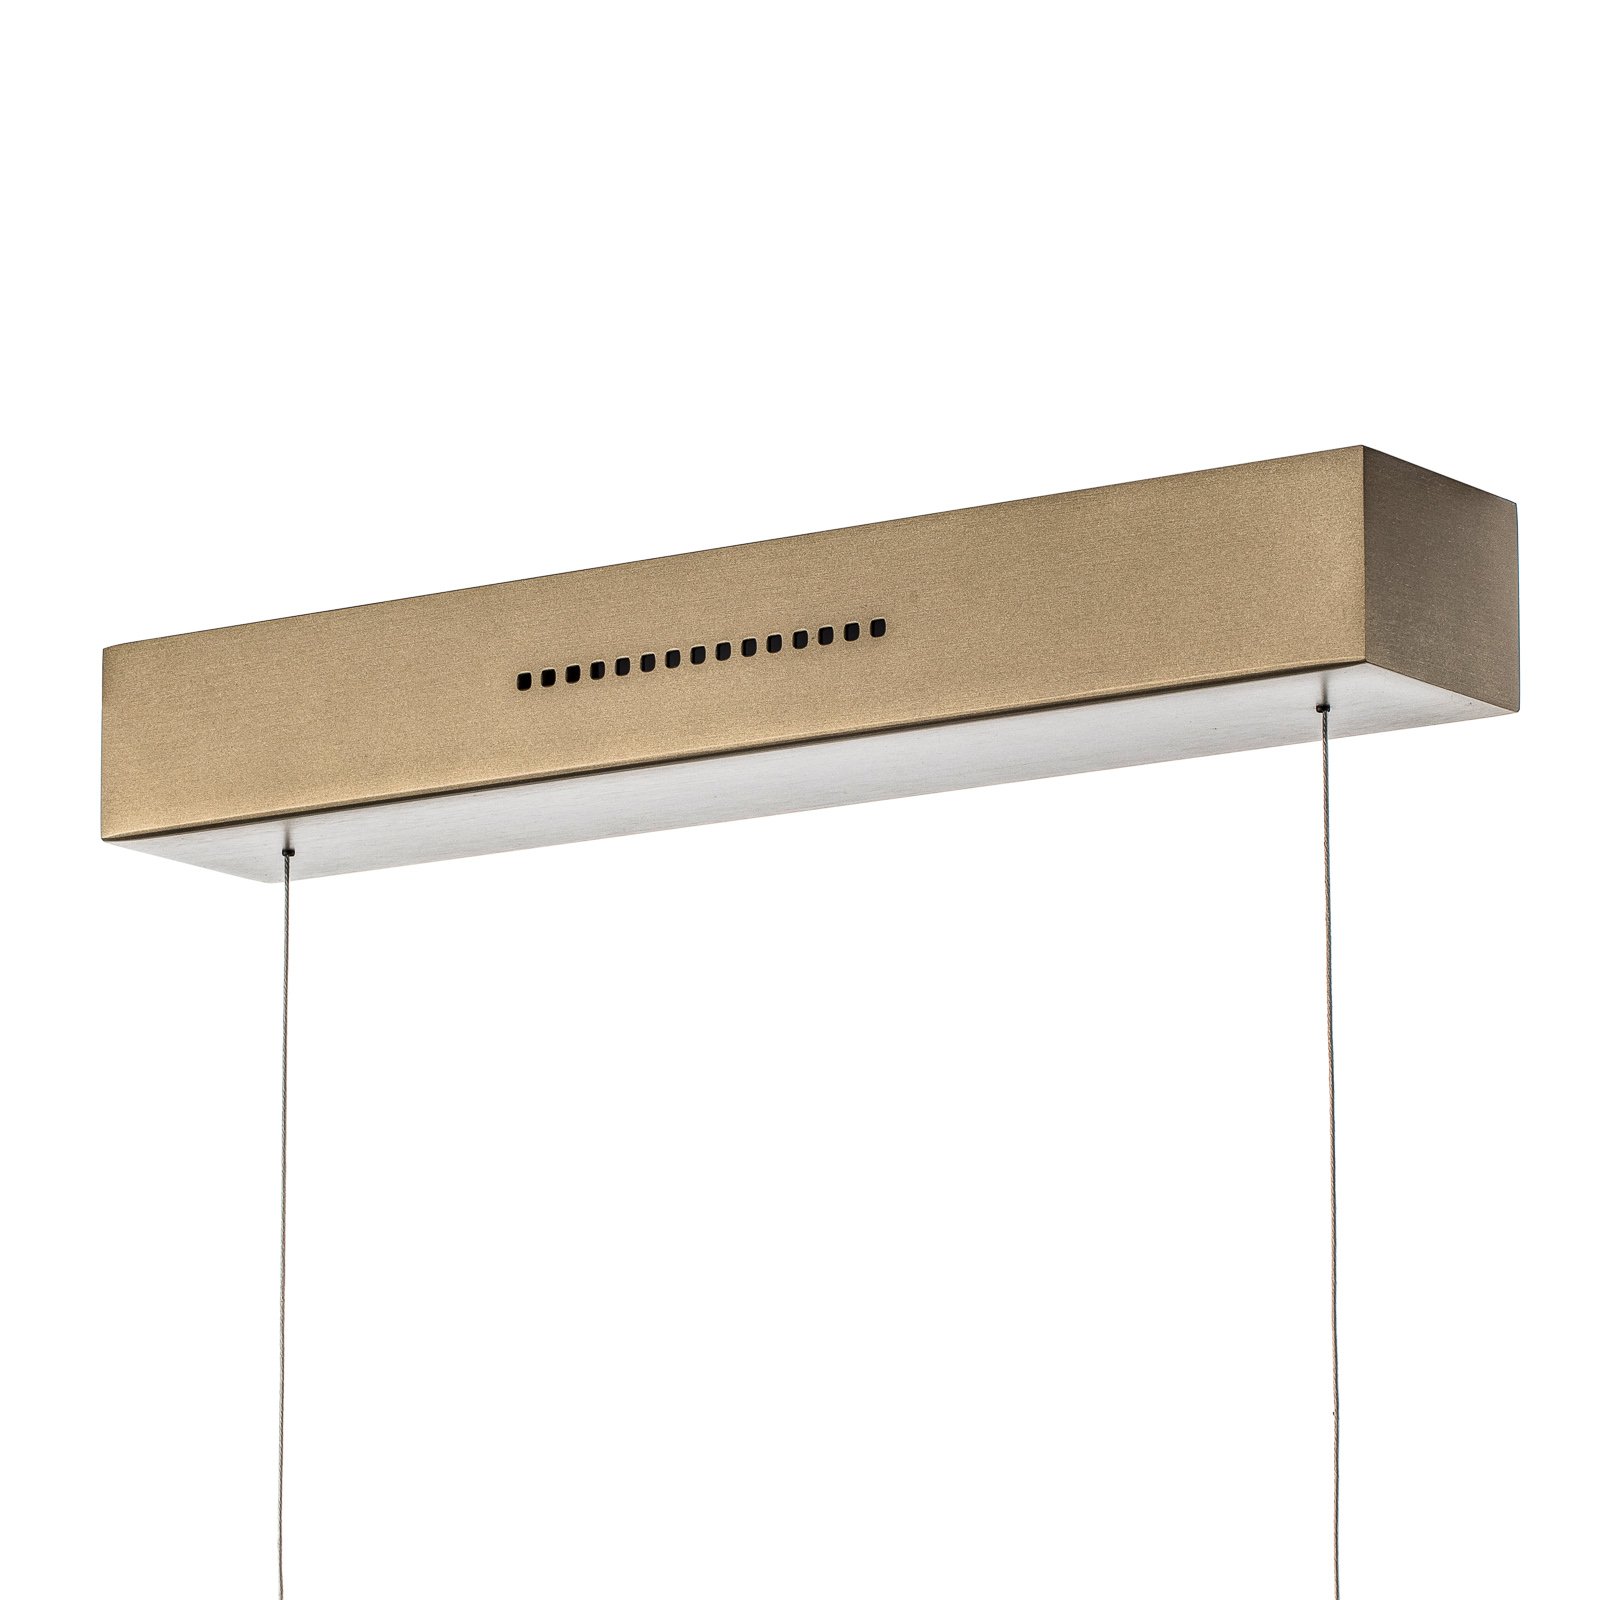 Závesné LED svietidlo Runa, bronz, dĺžka 132 cm